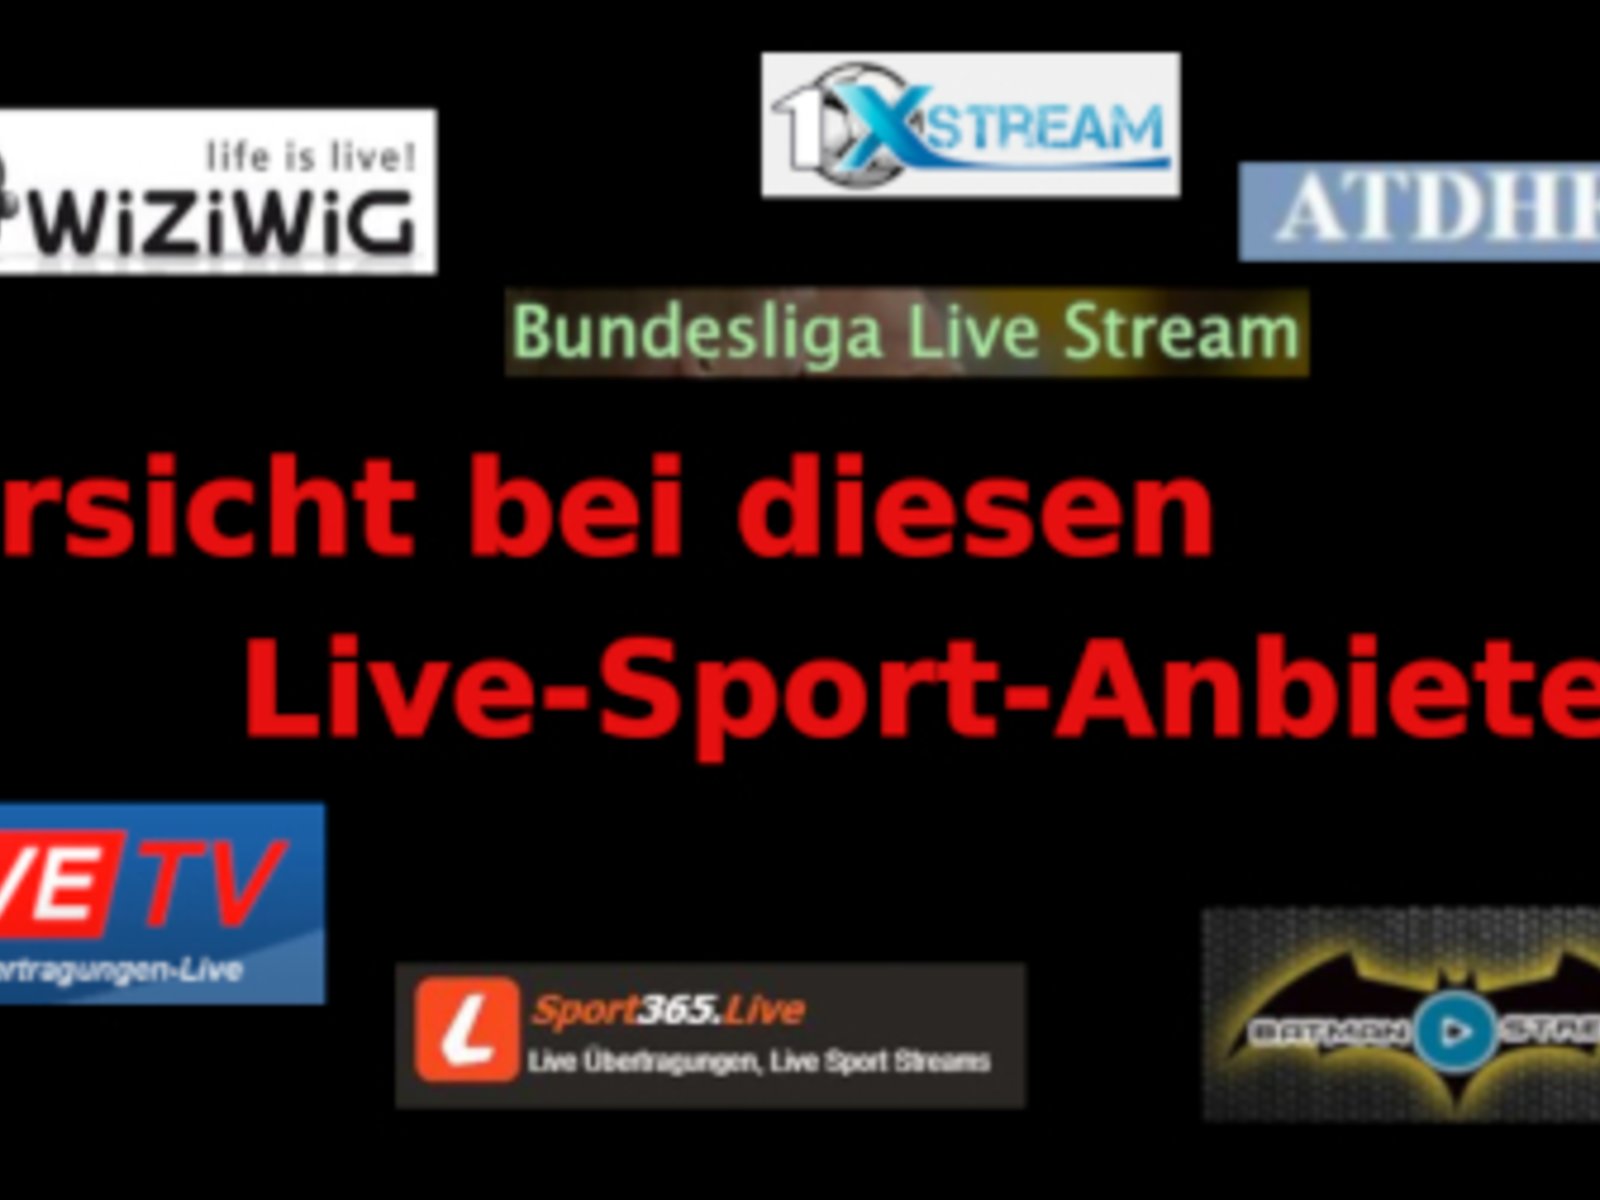 ATDHE and Alternativen Vorsicht bei diesen Live-Sport-Streams